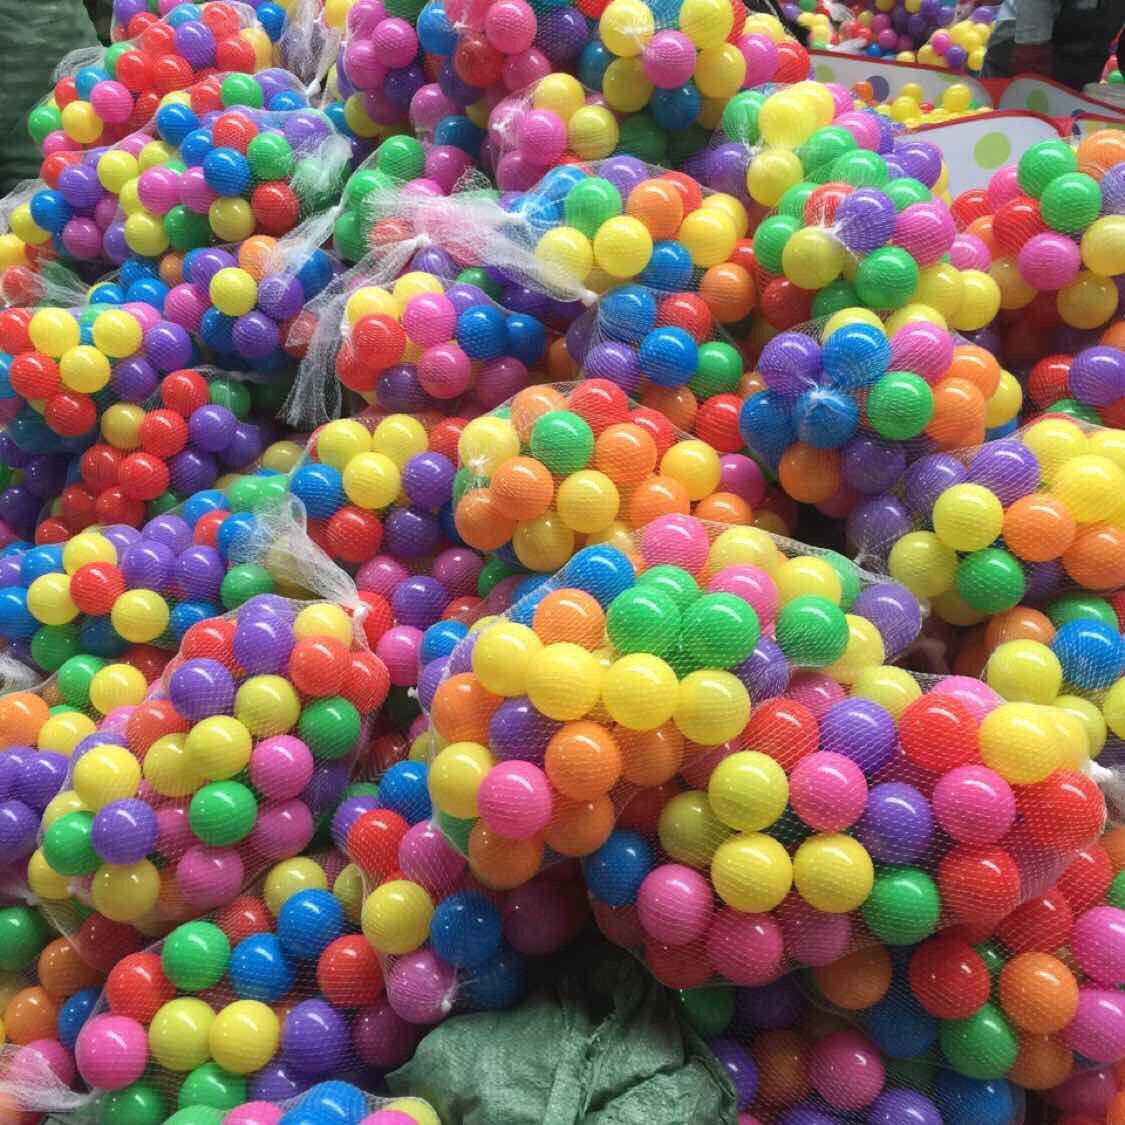 网袋装50/100/200塑料球波波球海洋球环保厂家直销批发加厚跨境